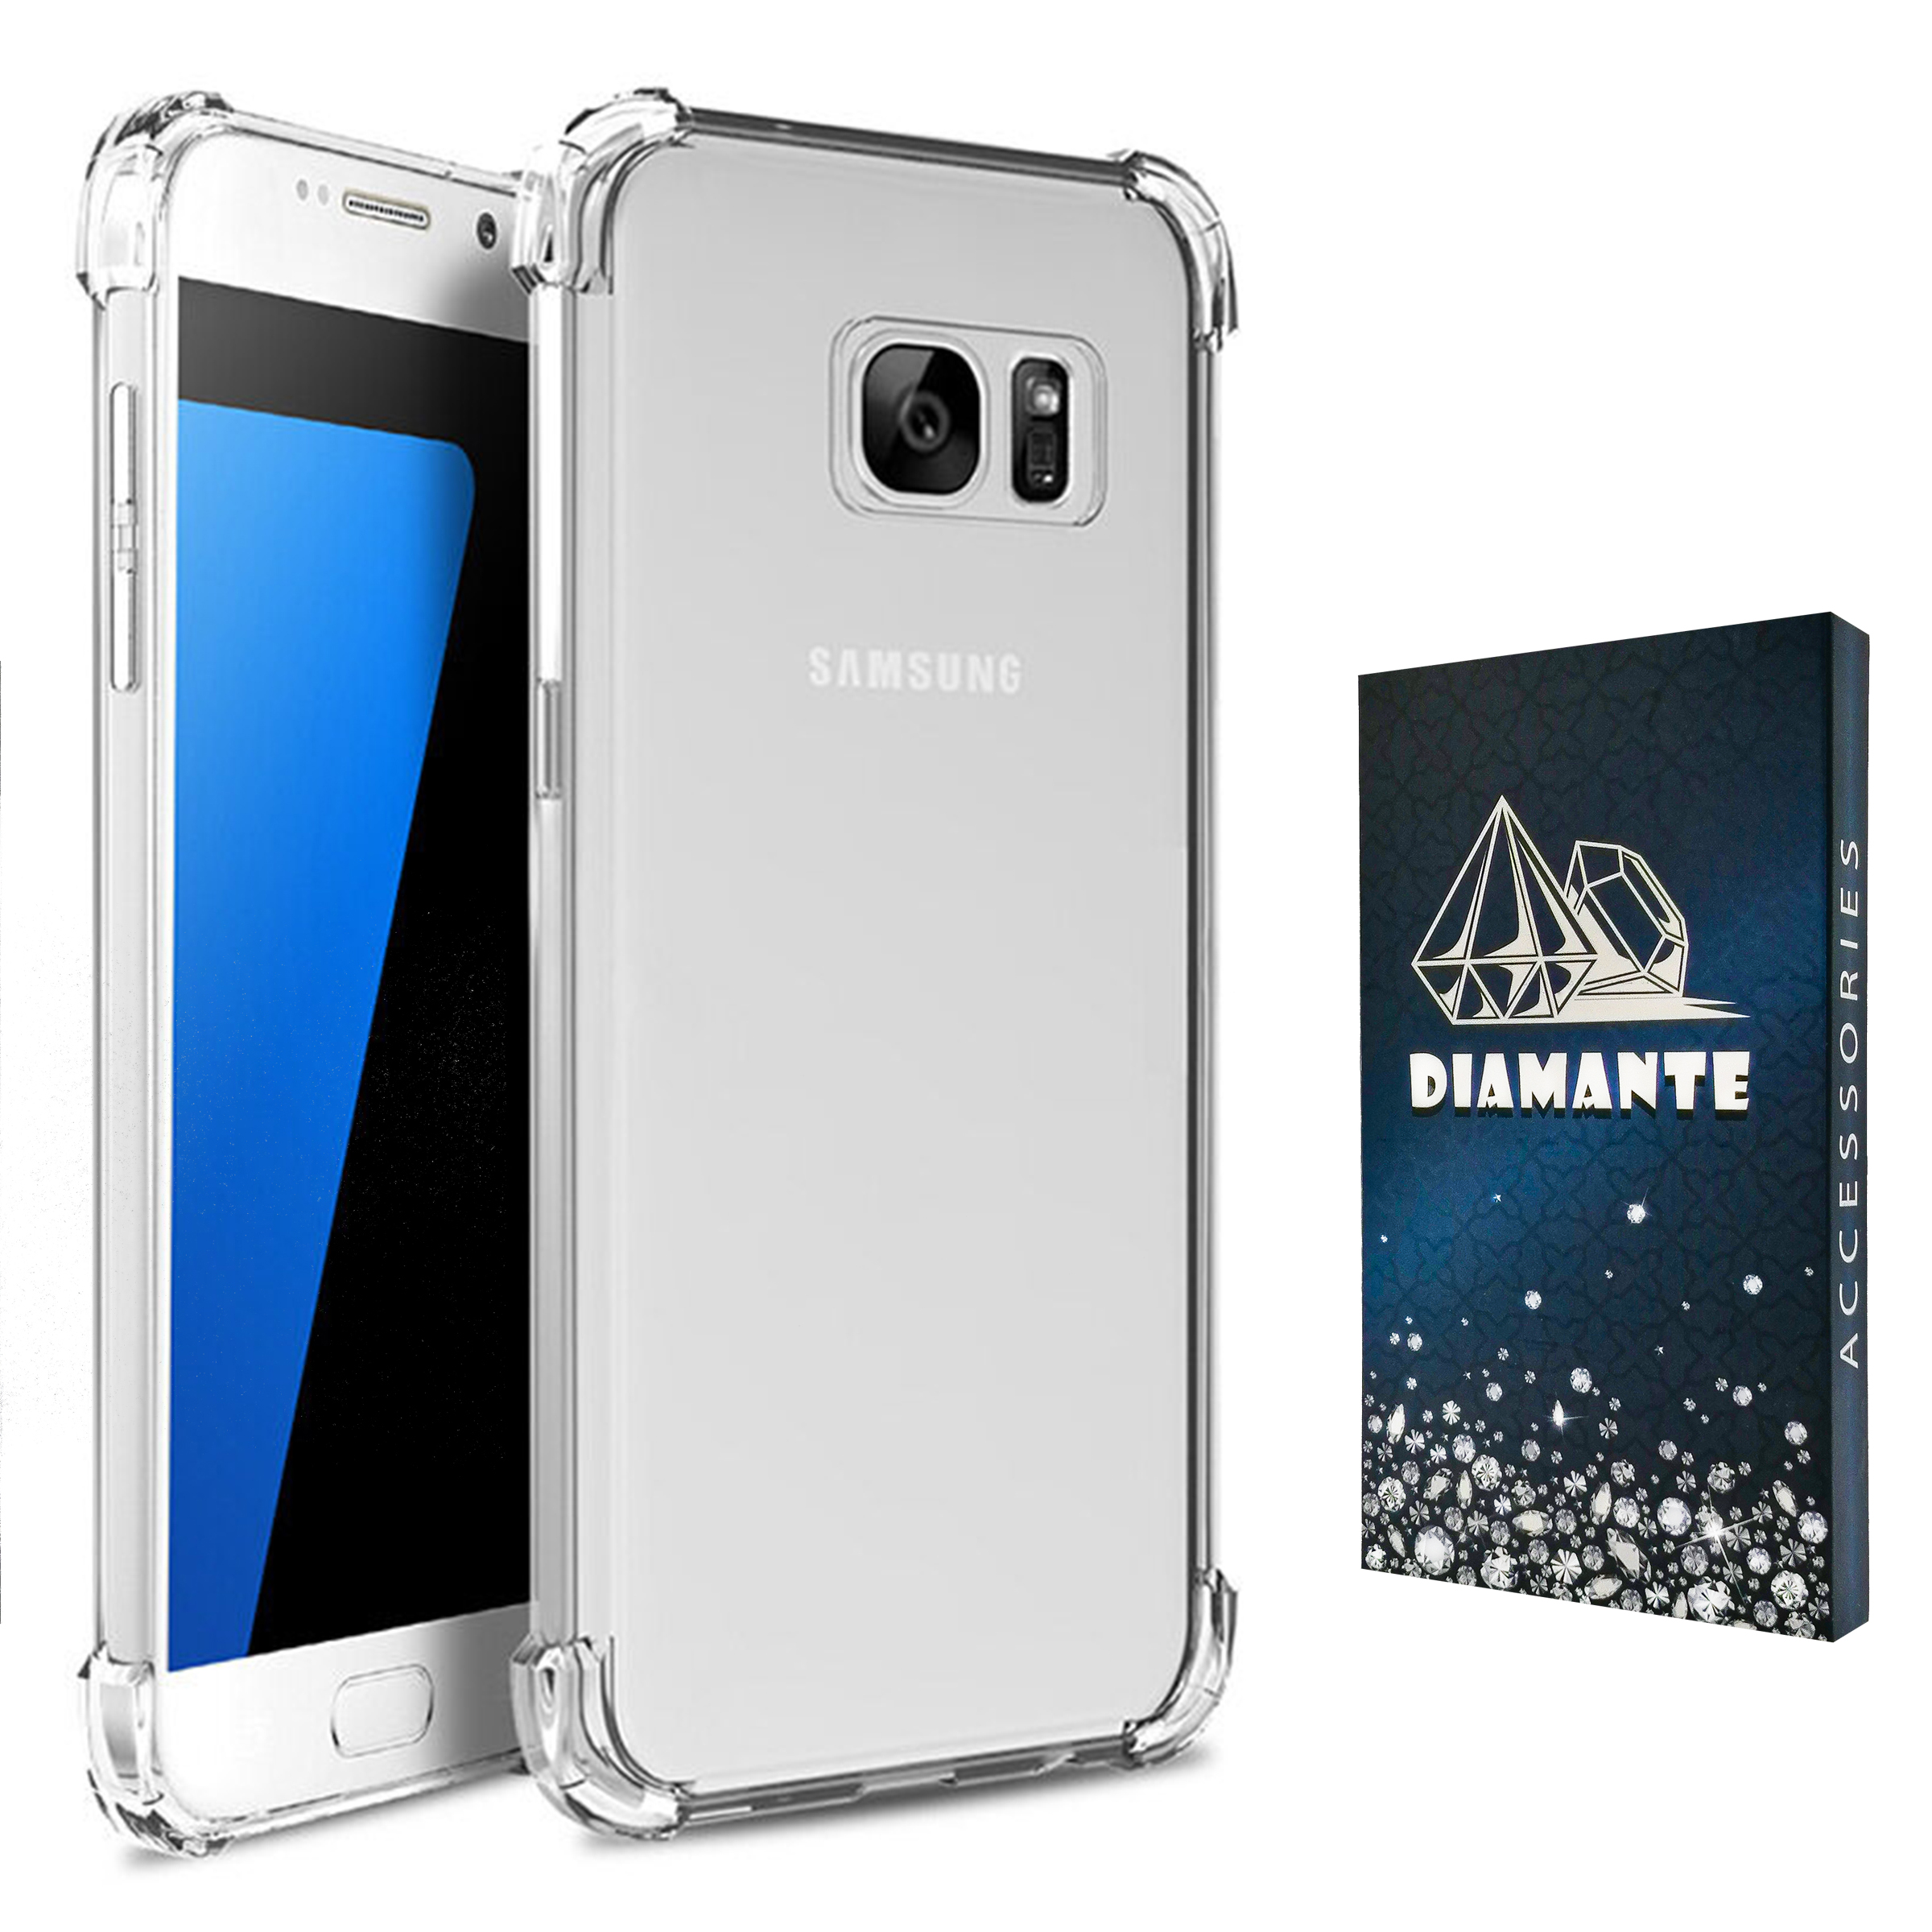  کاور دیامانته مدل shiny navy مناسب برای گوشی موبایل سامسونگ Galaxy Note 5